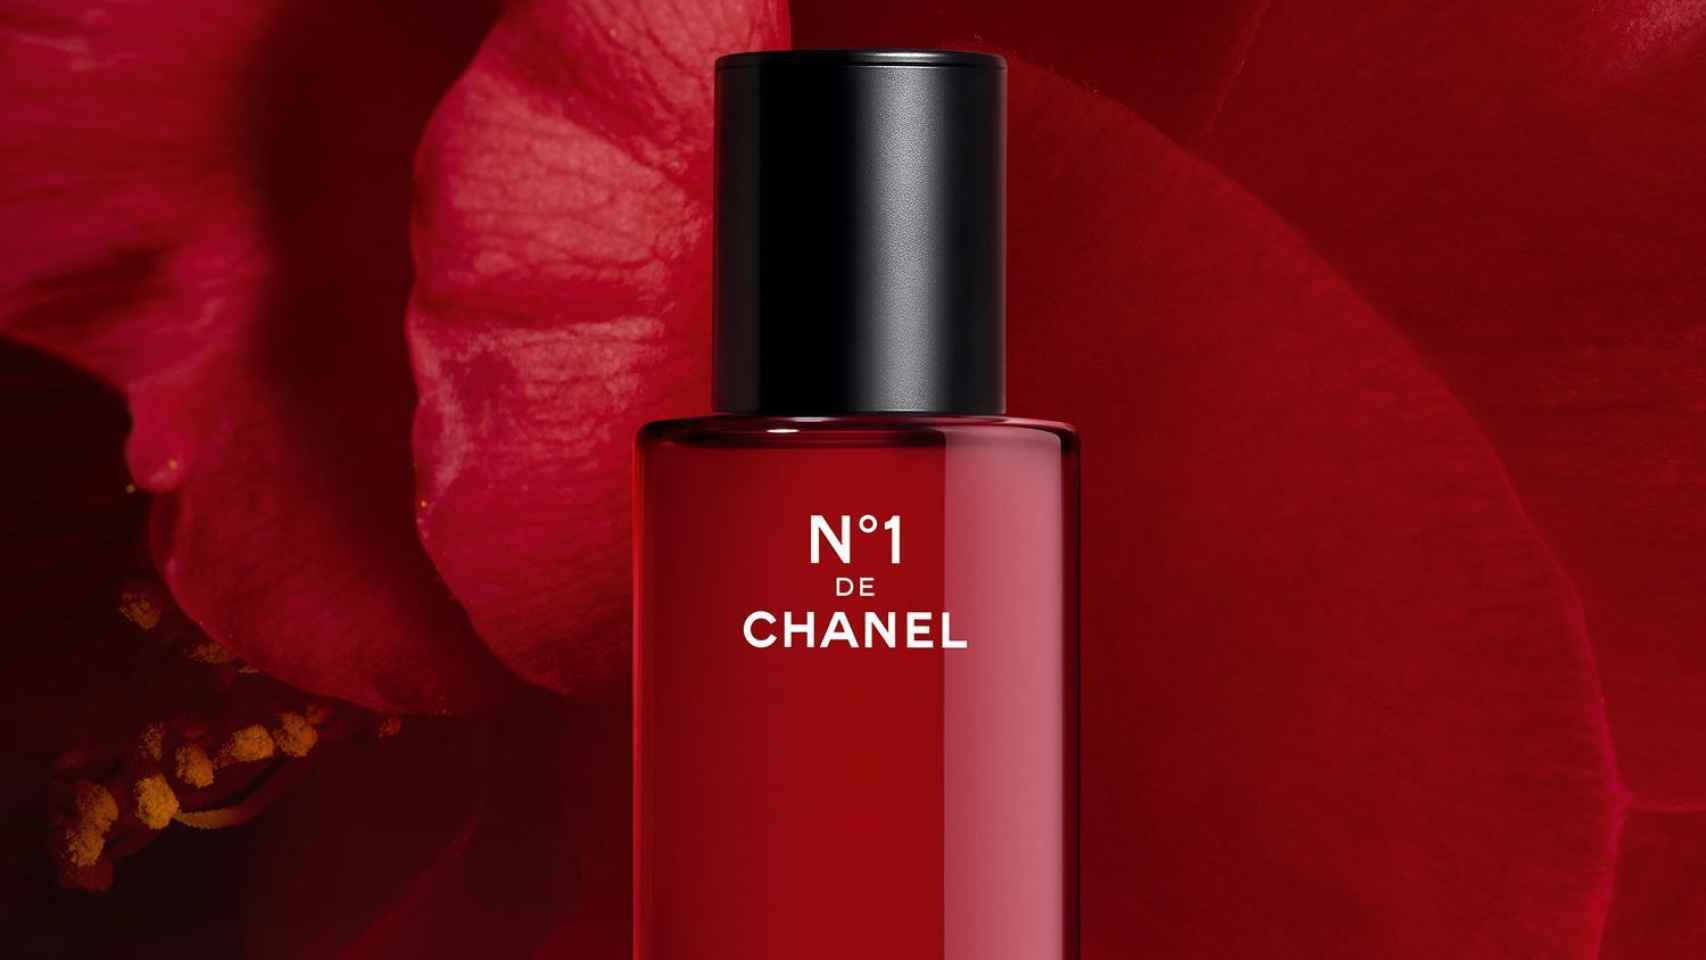 Chanel ha lanzado la línea de belleza Nº 1, basada en la camelia roja.